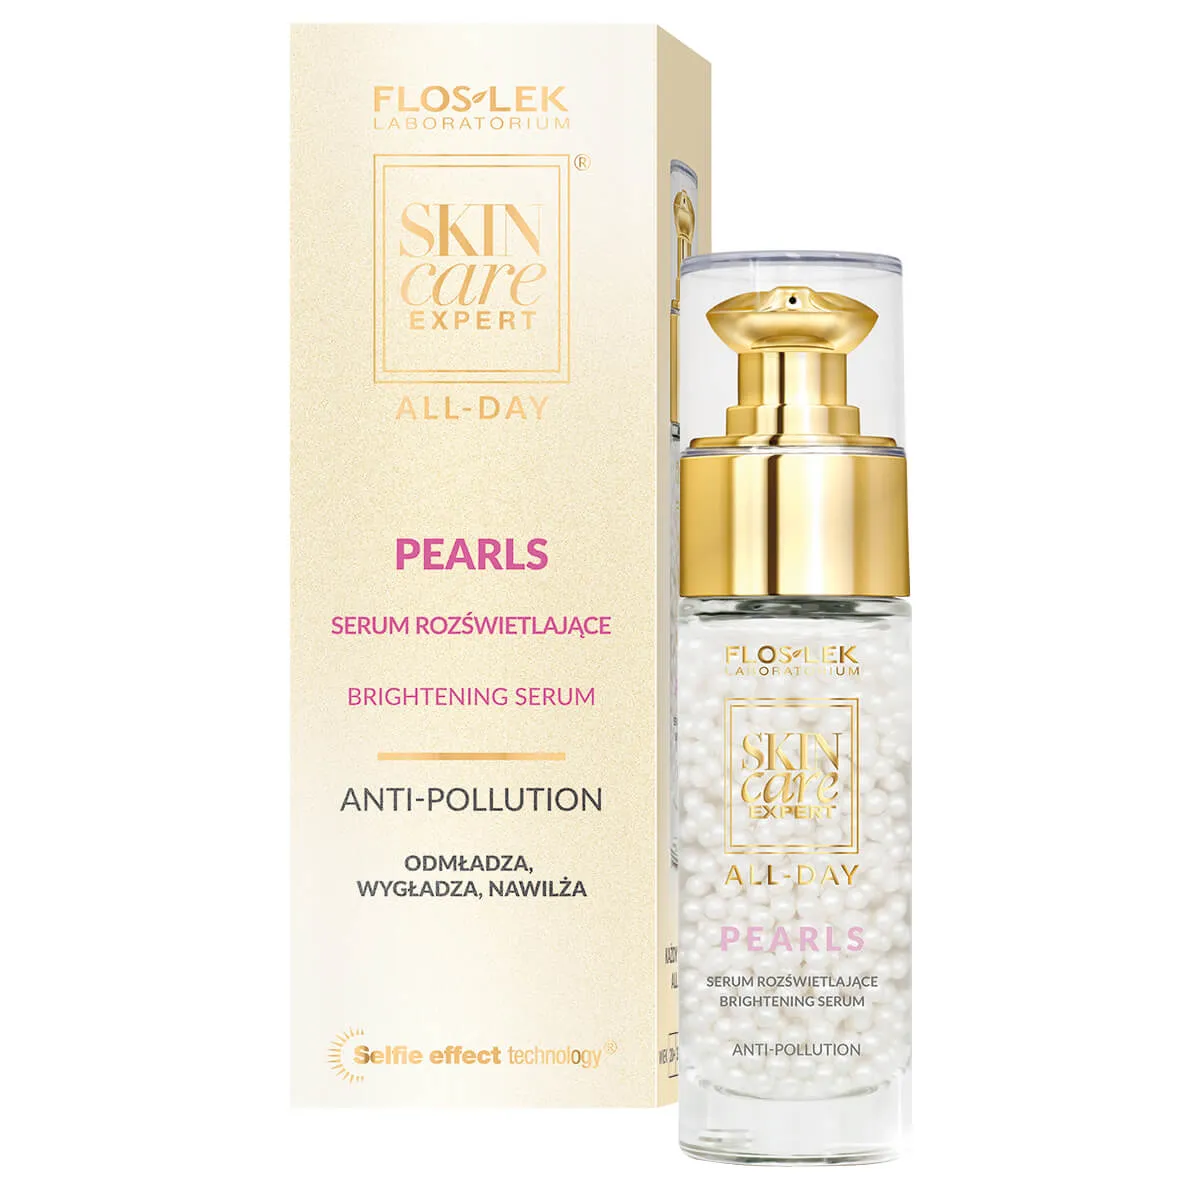 Flos-Lek Skin Care Expert All-Day, Pearls, serum rozświetlające, 30 ml